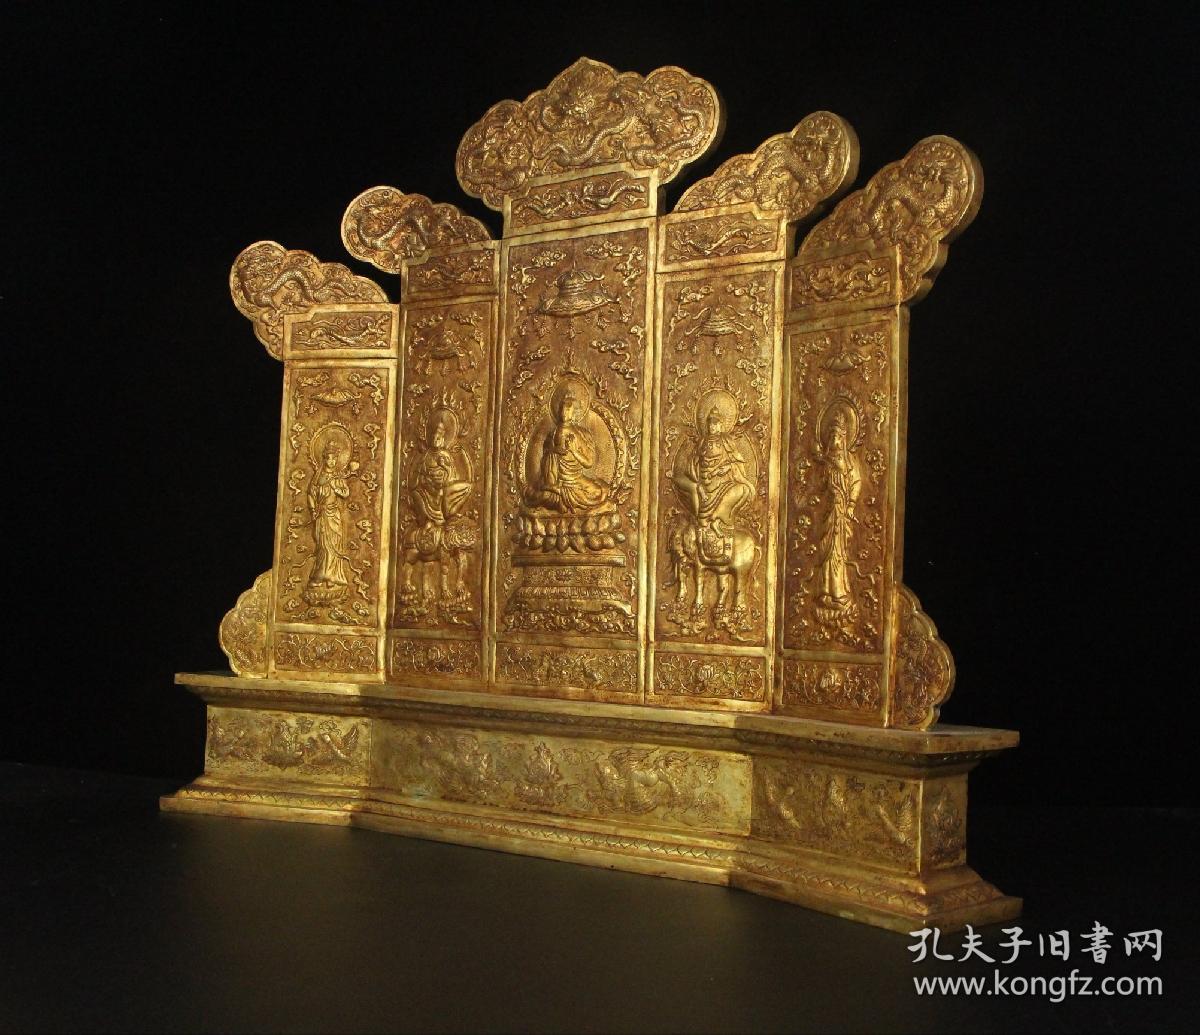 旧藏铜鎏金纯手工錾刻佛像屏风
高65厘米   长69厘米   宽10厘米   重11760克